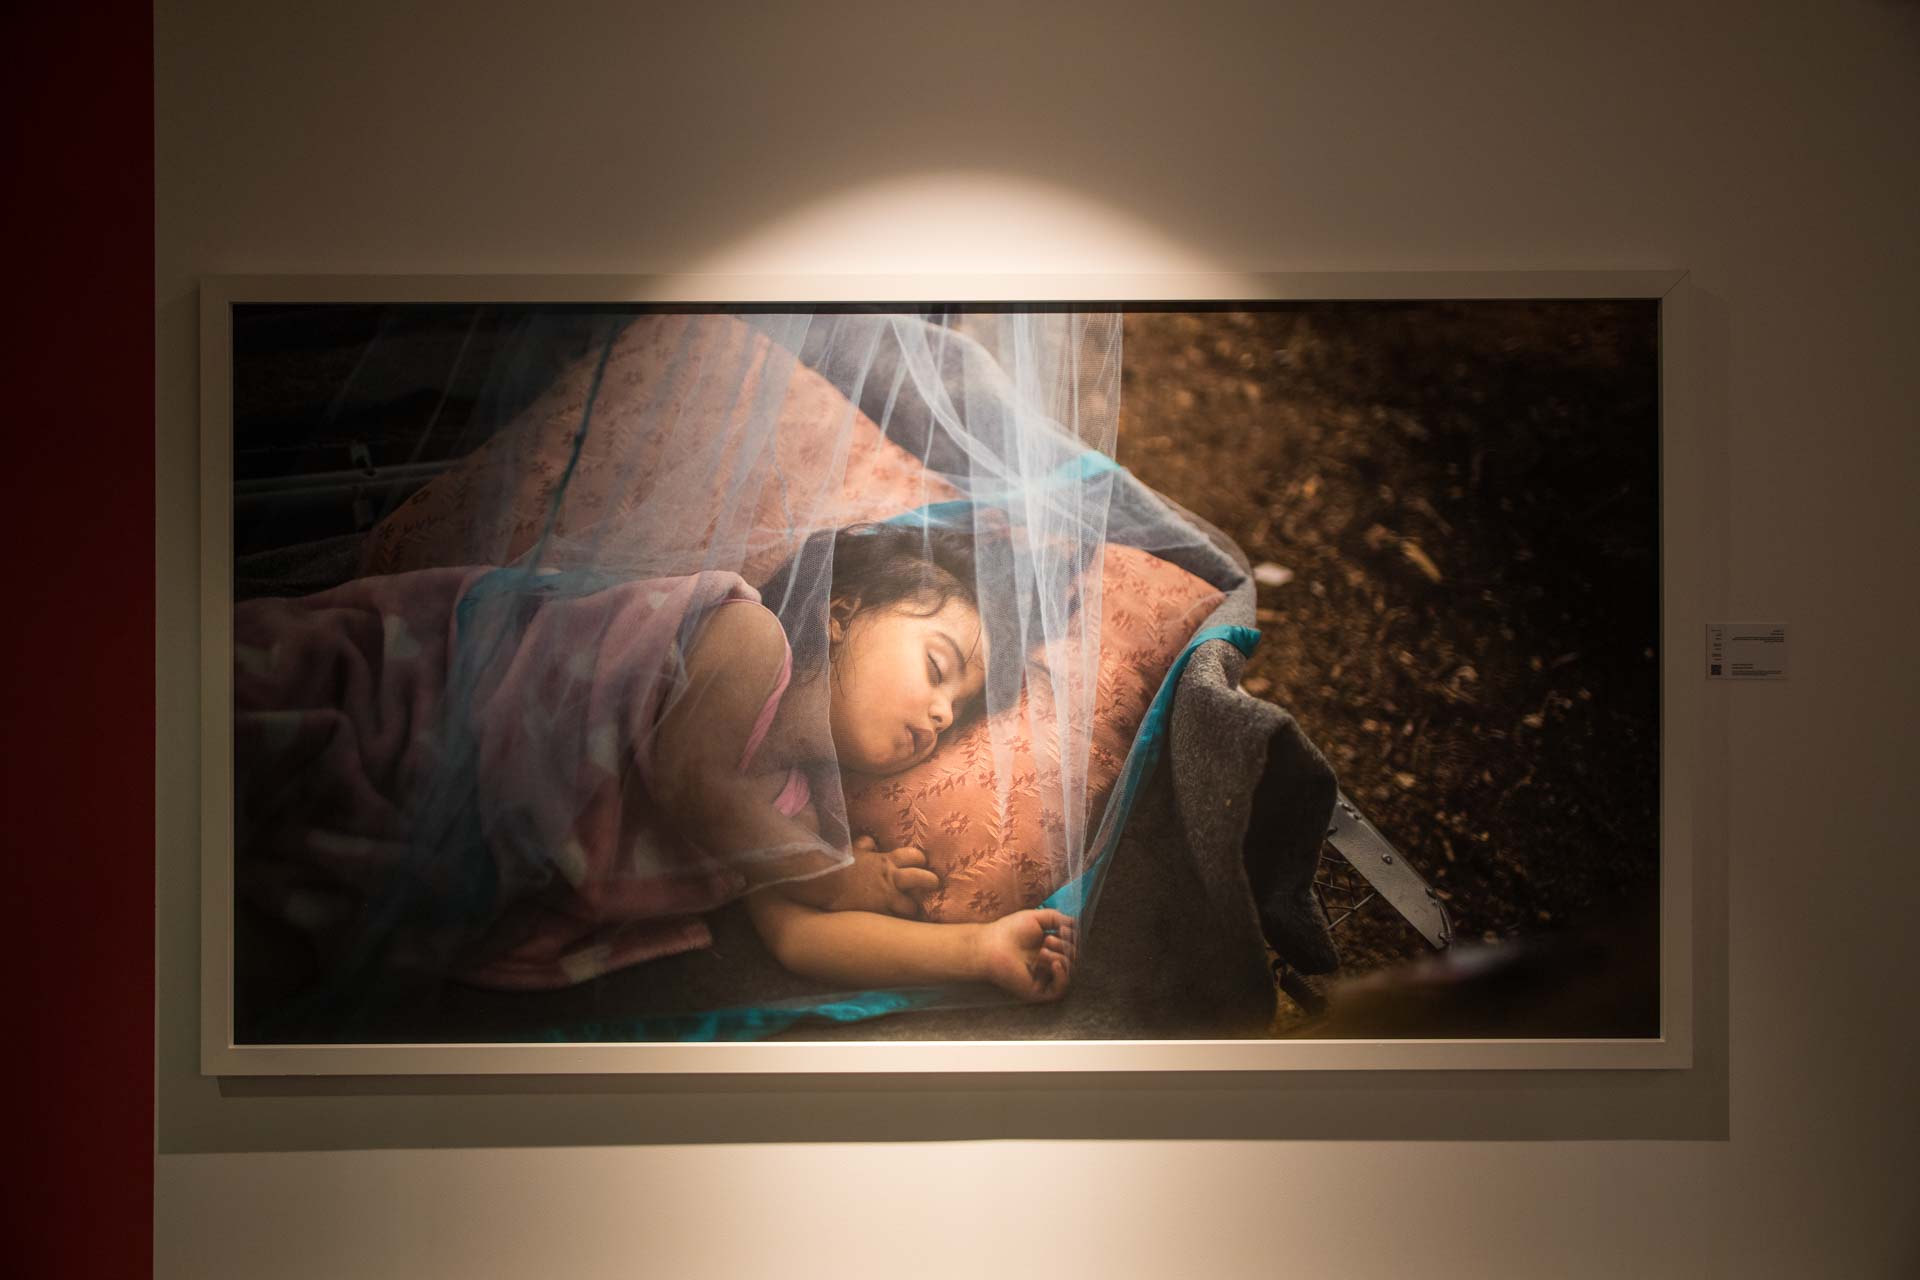 صور من معرض يوميات لاجئ في إكسبوجر 2018 (1)